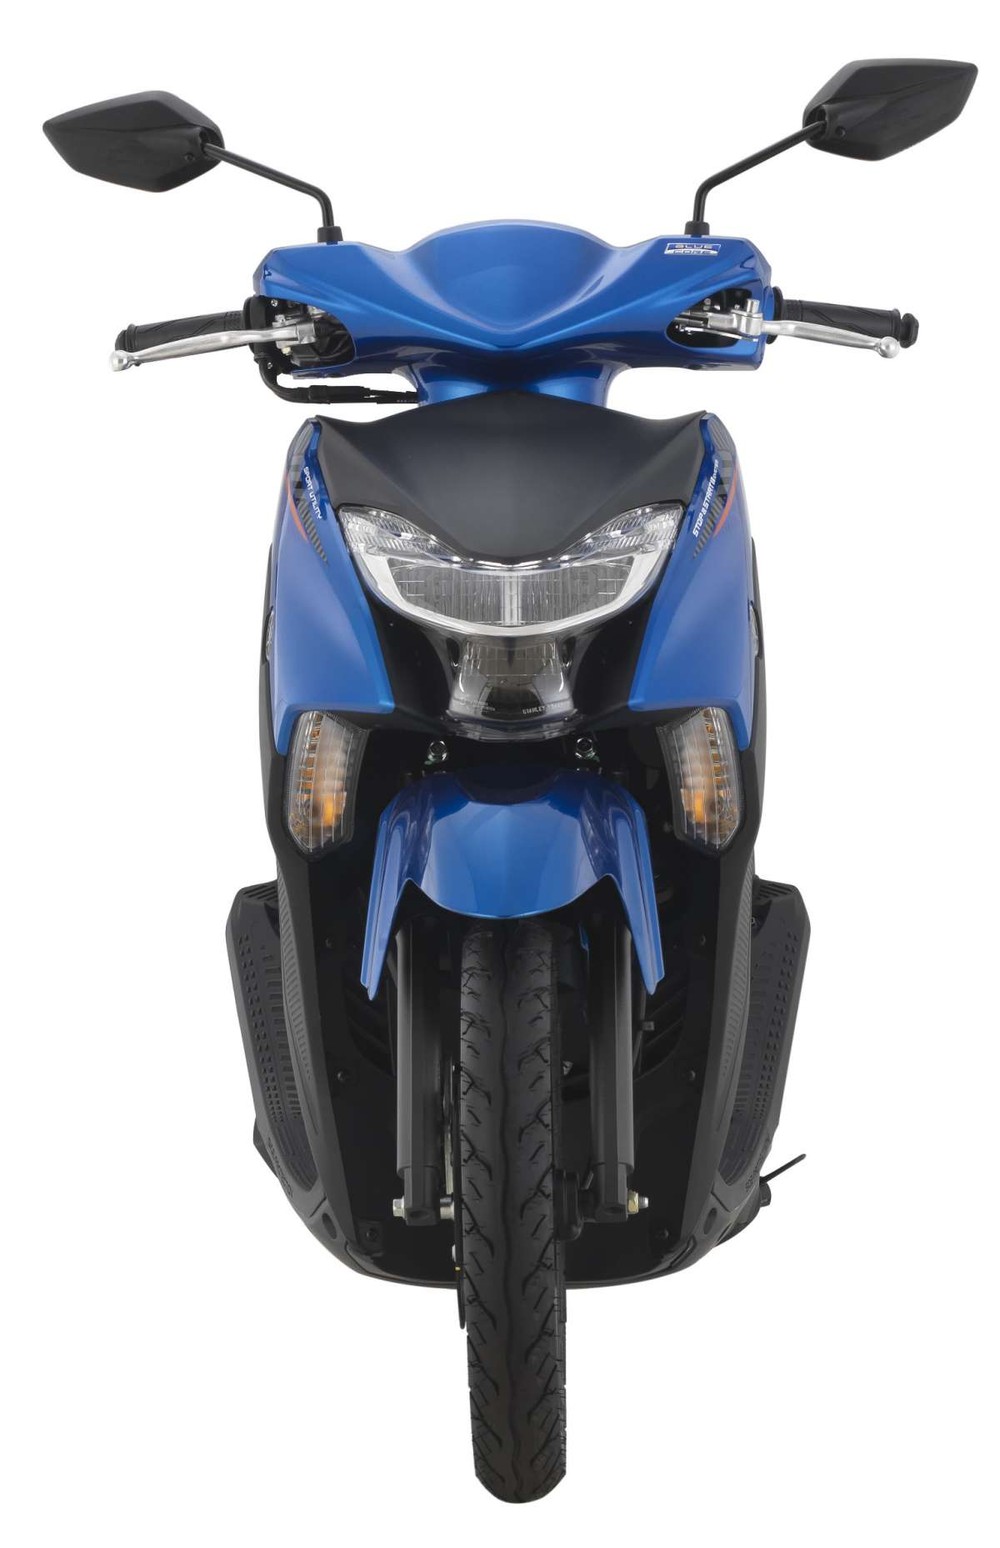 Yamaha tung mẫu xe tay ga giá rẻ 29 triệu đồng, ủ mưu đánh bật Honda Vision - Ảnh 2.